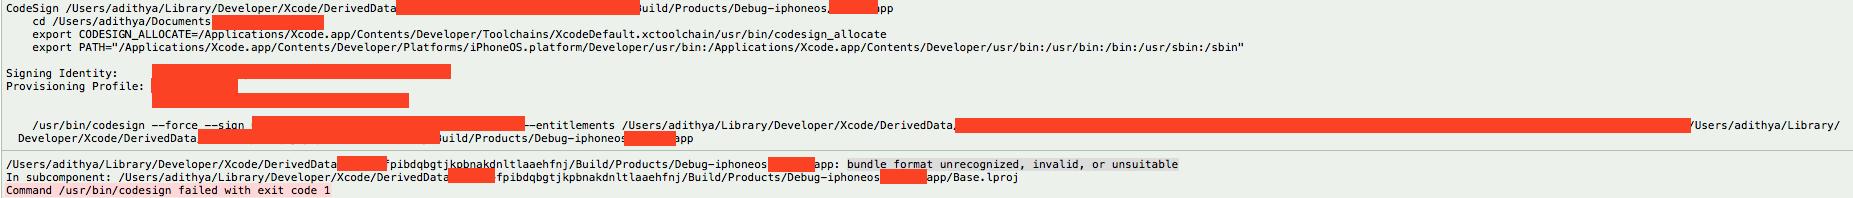 xcode error fichier objet fichiers non reconnus invalides ou inappropriés